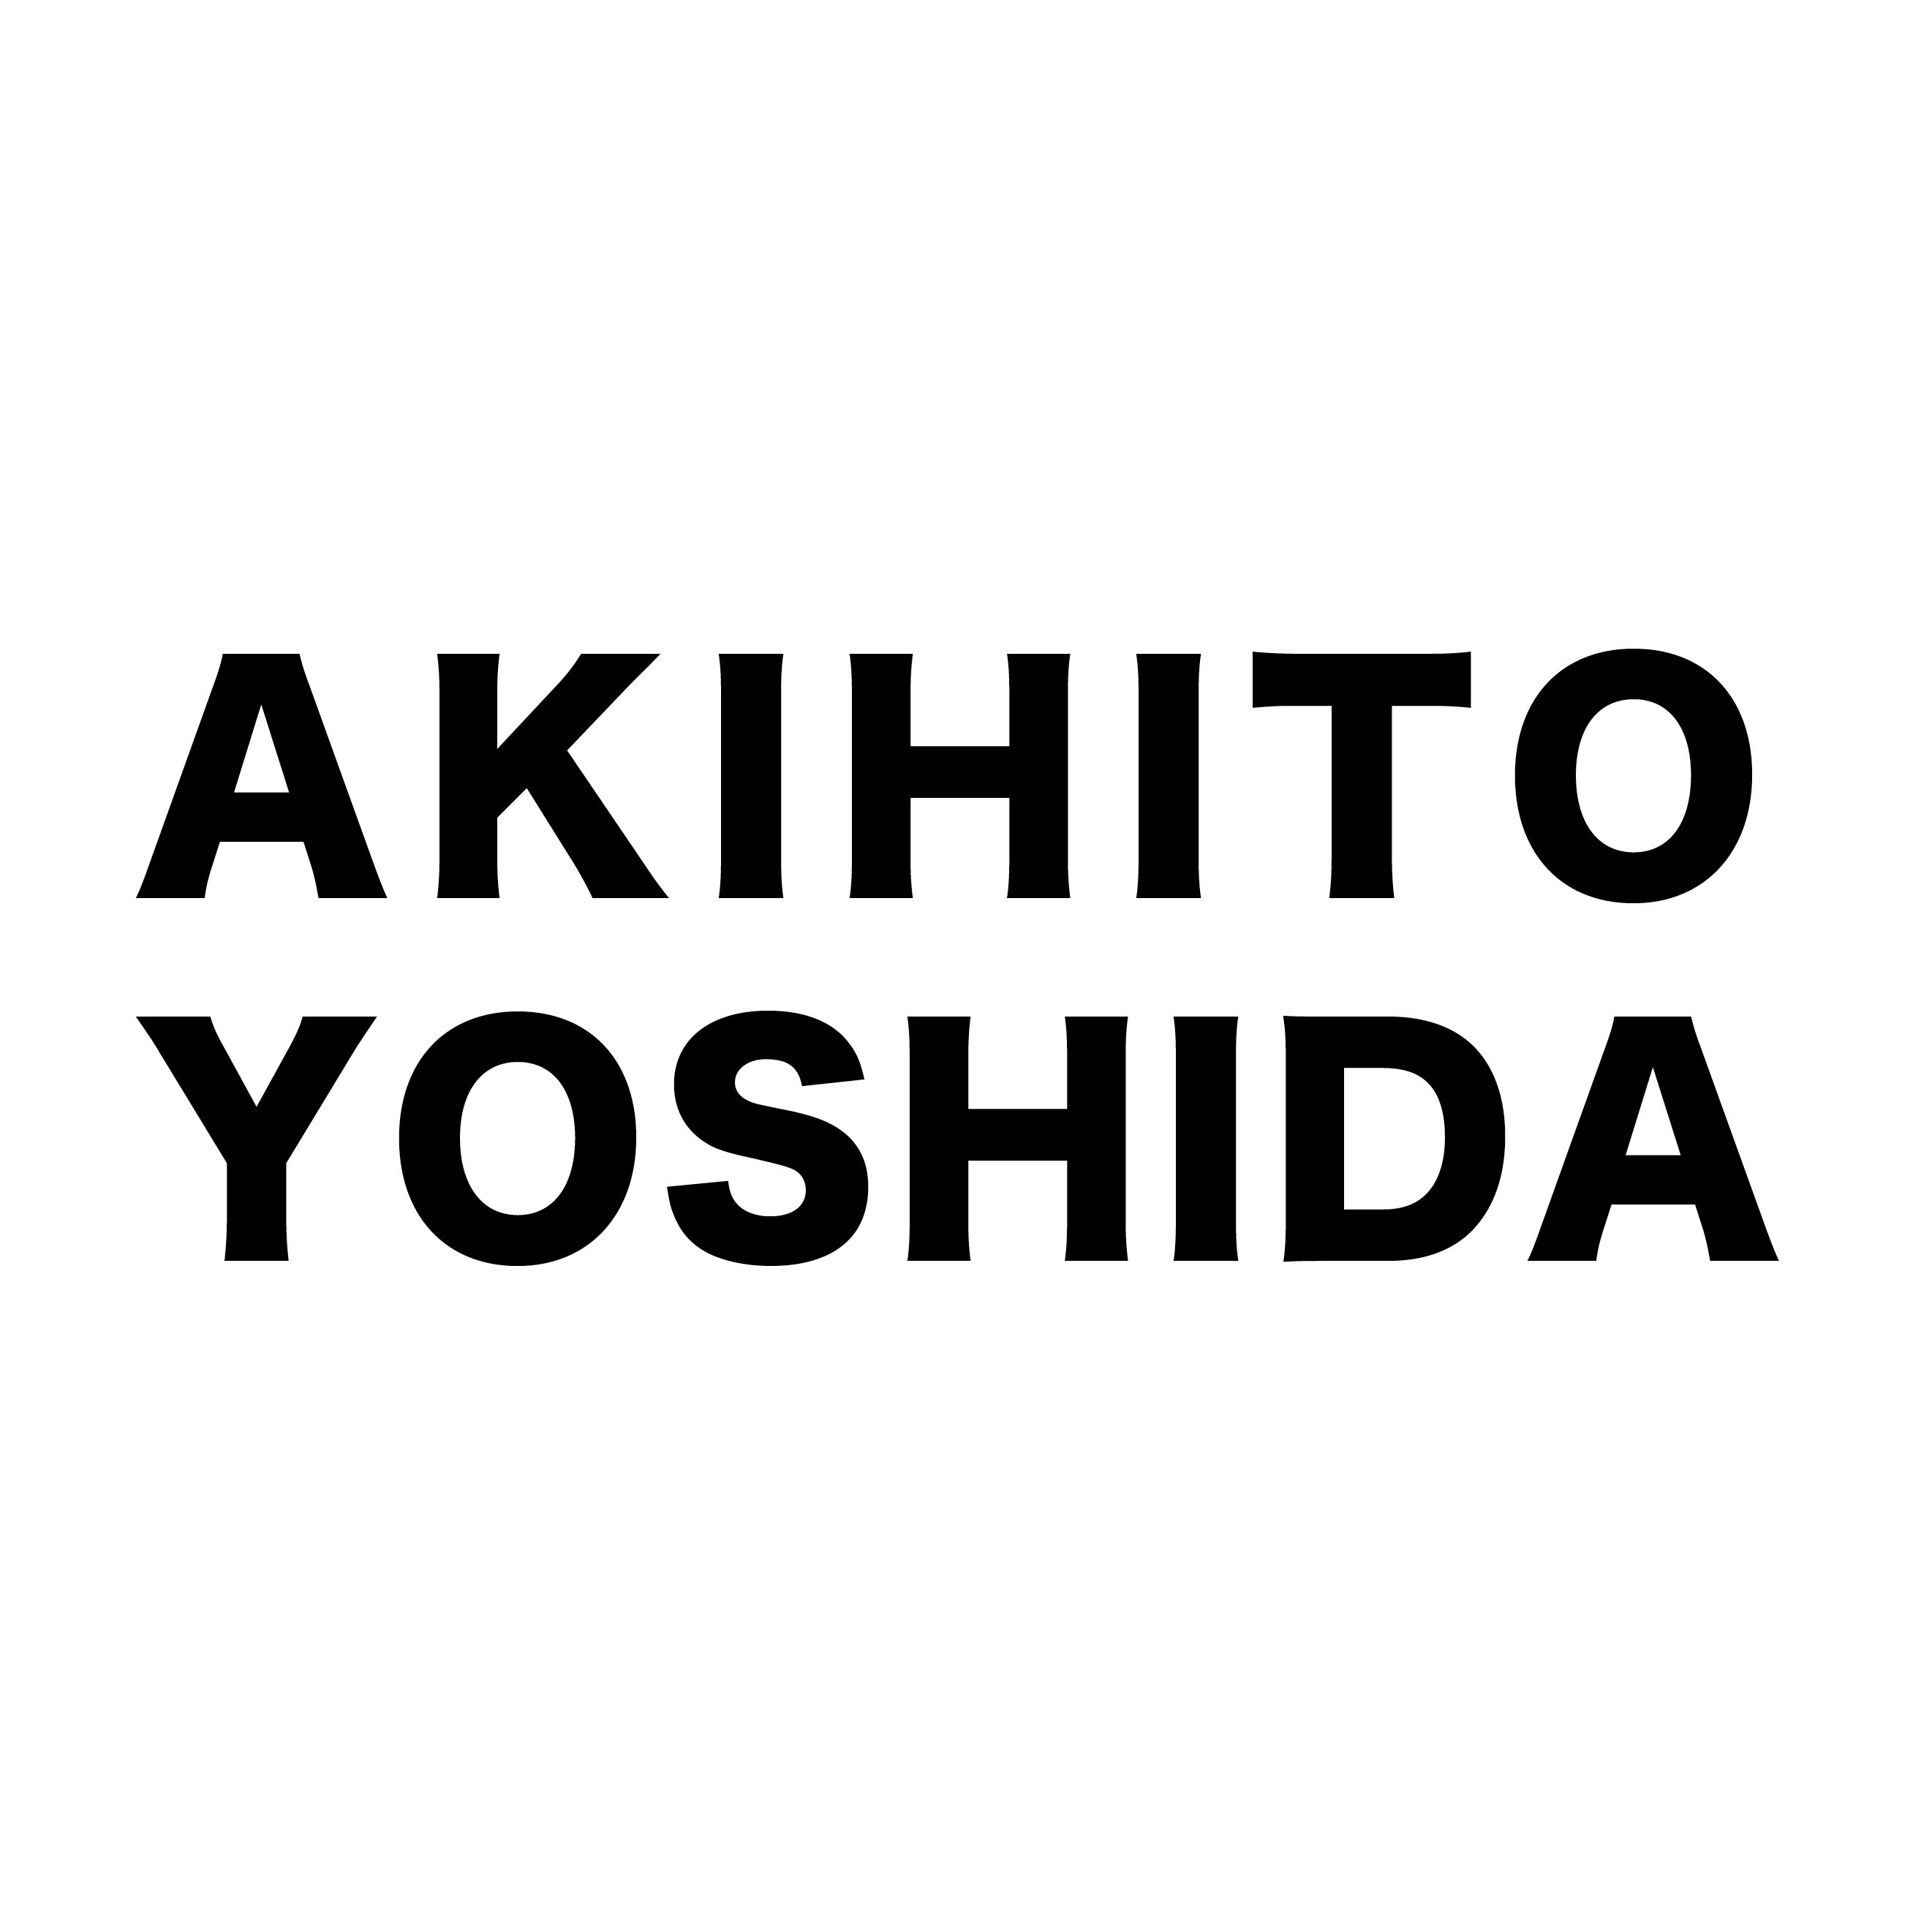 AKIHITO YOSHIDA